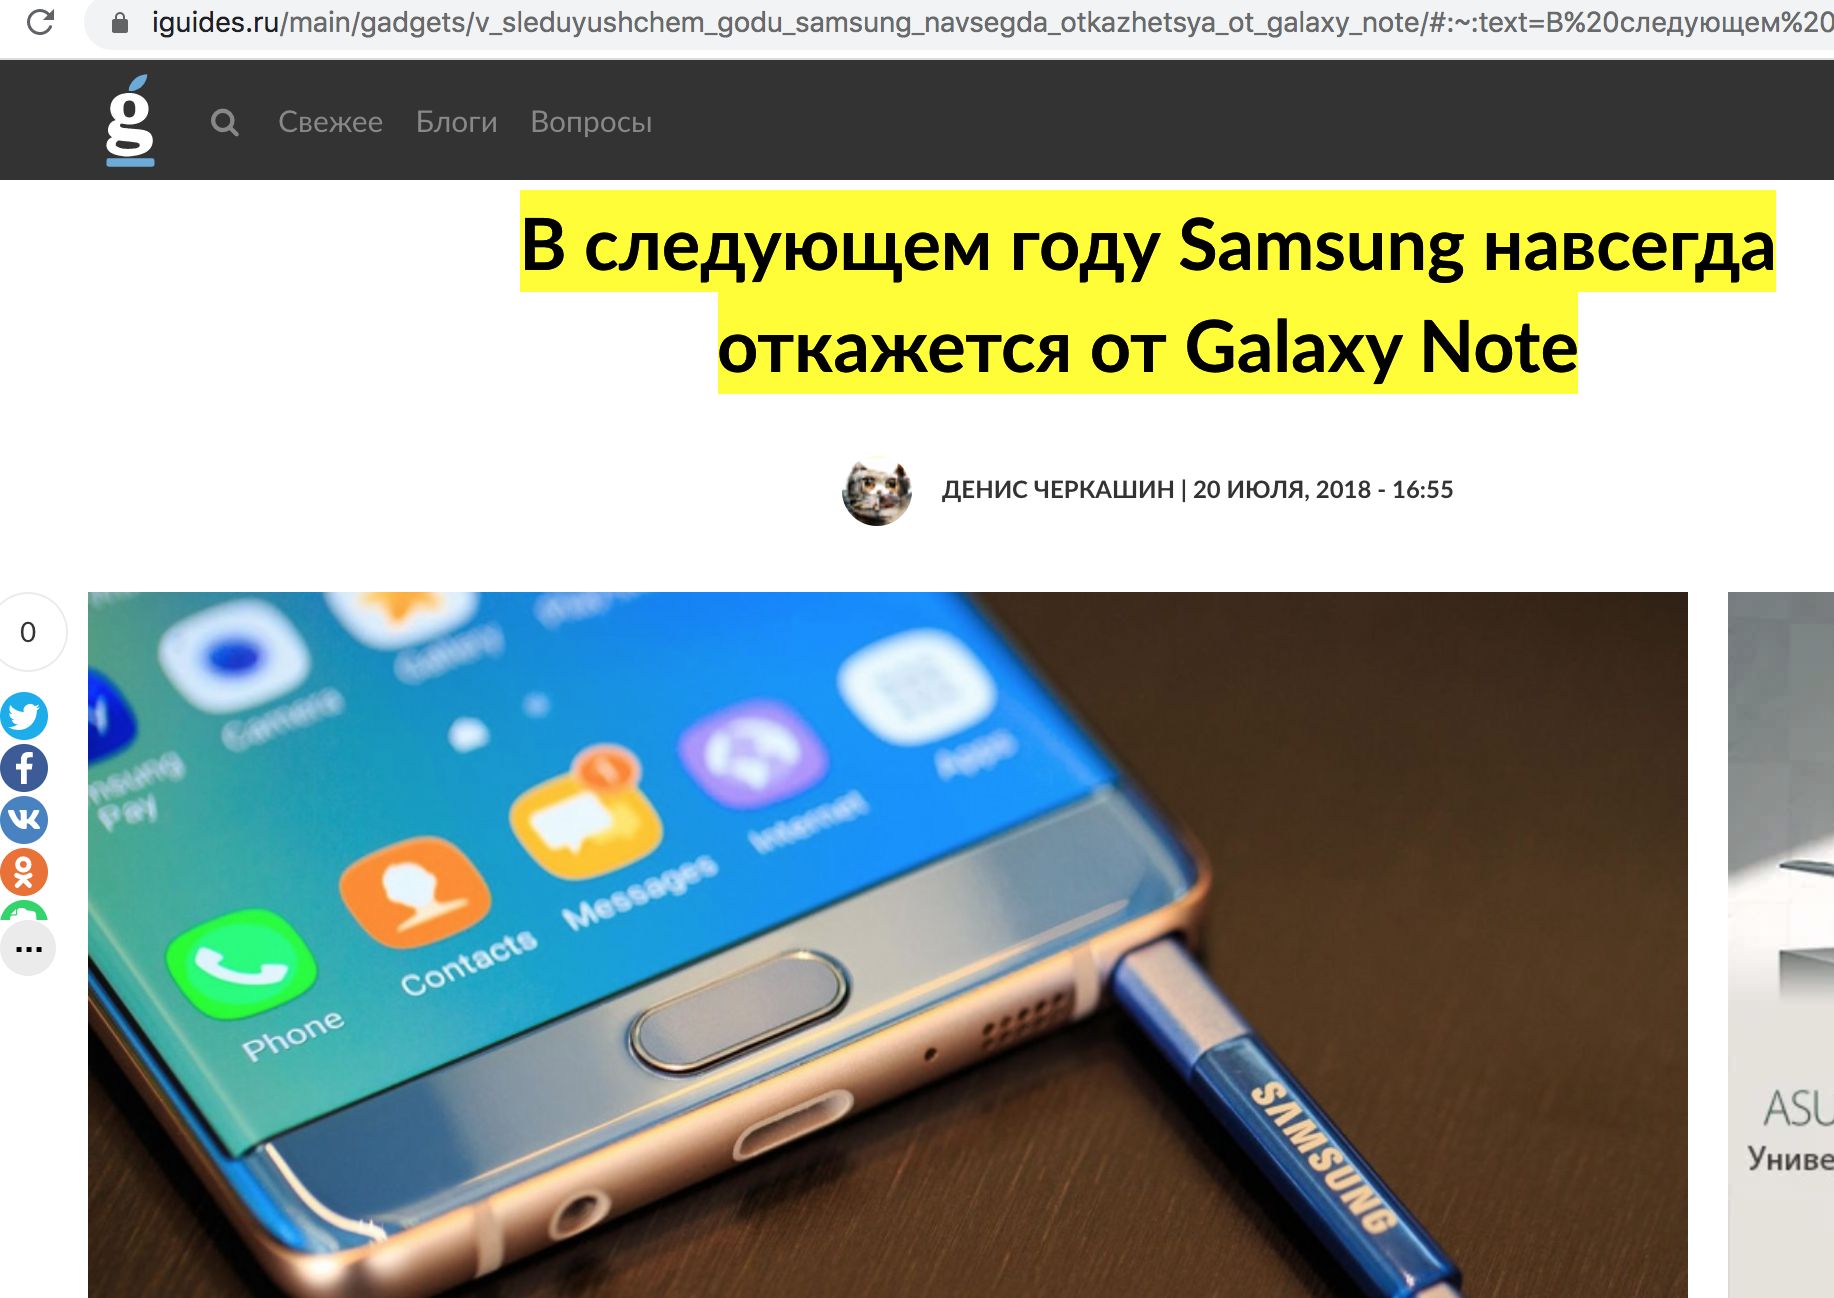 Похороны Galaxy Note от Samsung, смартфоны Note отменены навсегда!